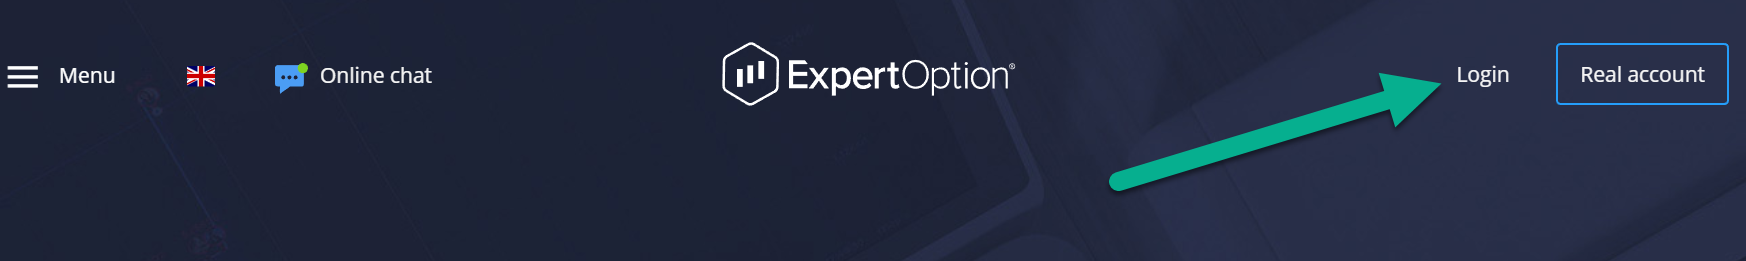 ExpertOption login deposit